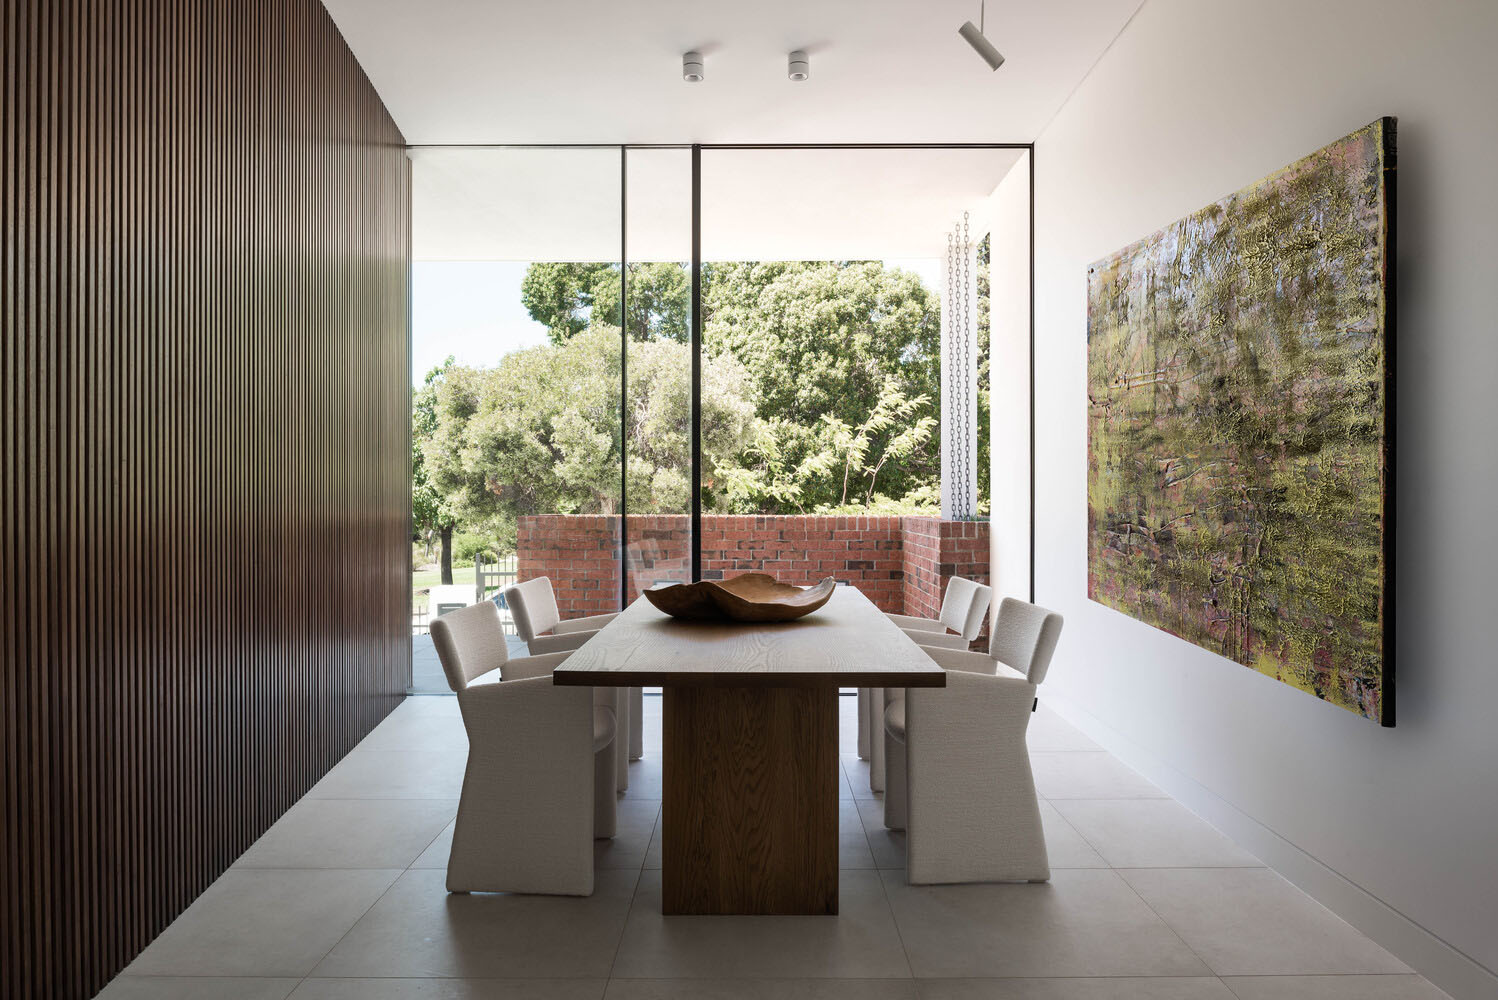 Robeson Architects,澳大利亚,410㎡,别墅设计案例,庭院别墅设计,别墅设计方案,别墅装修,国外别墅设计,海德公园别墅